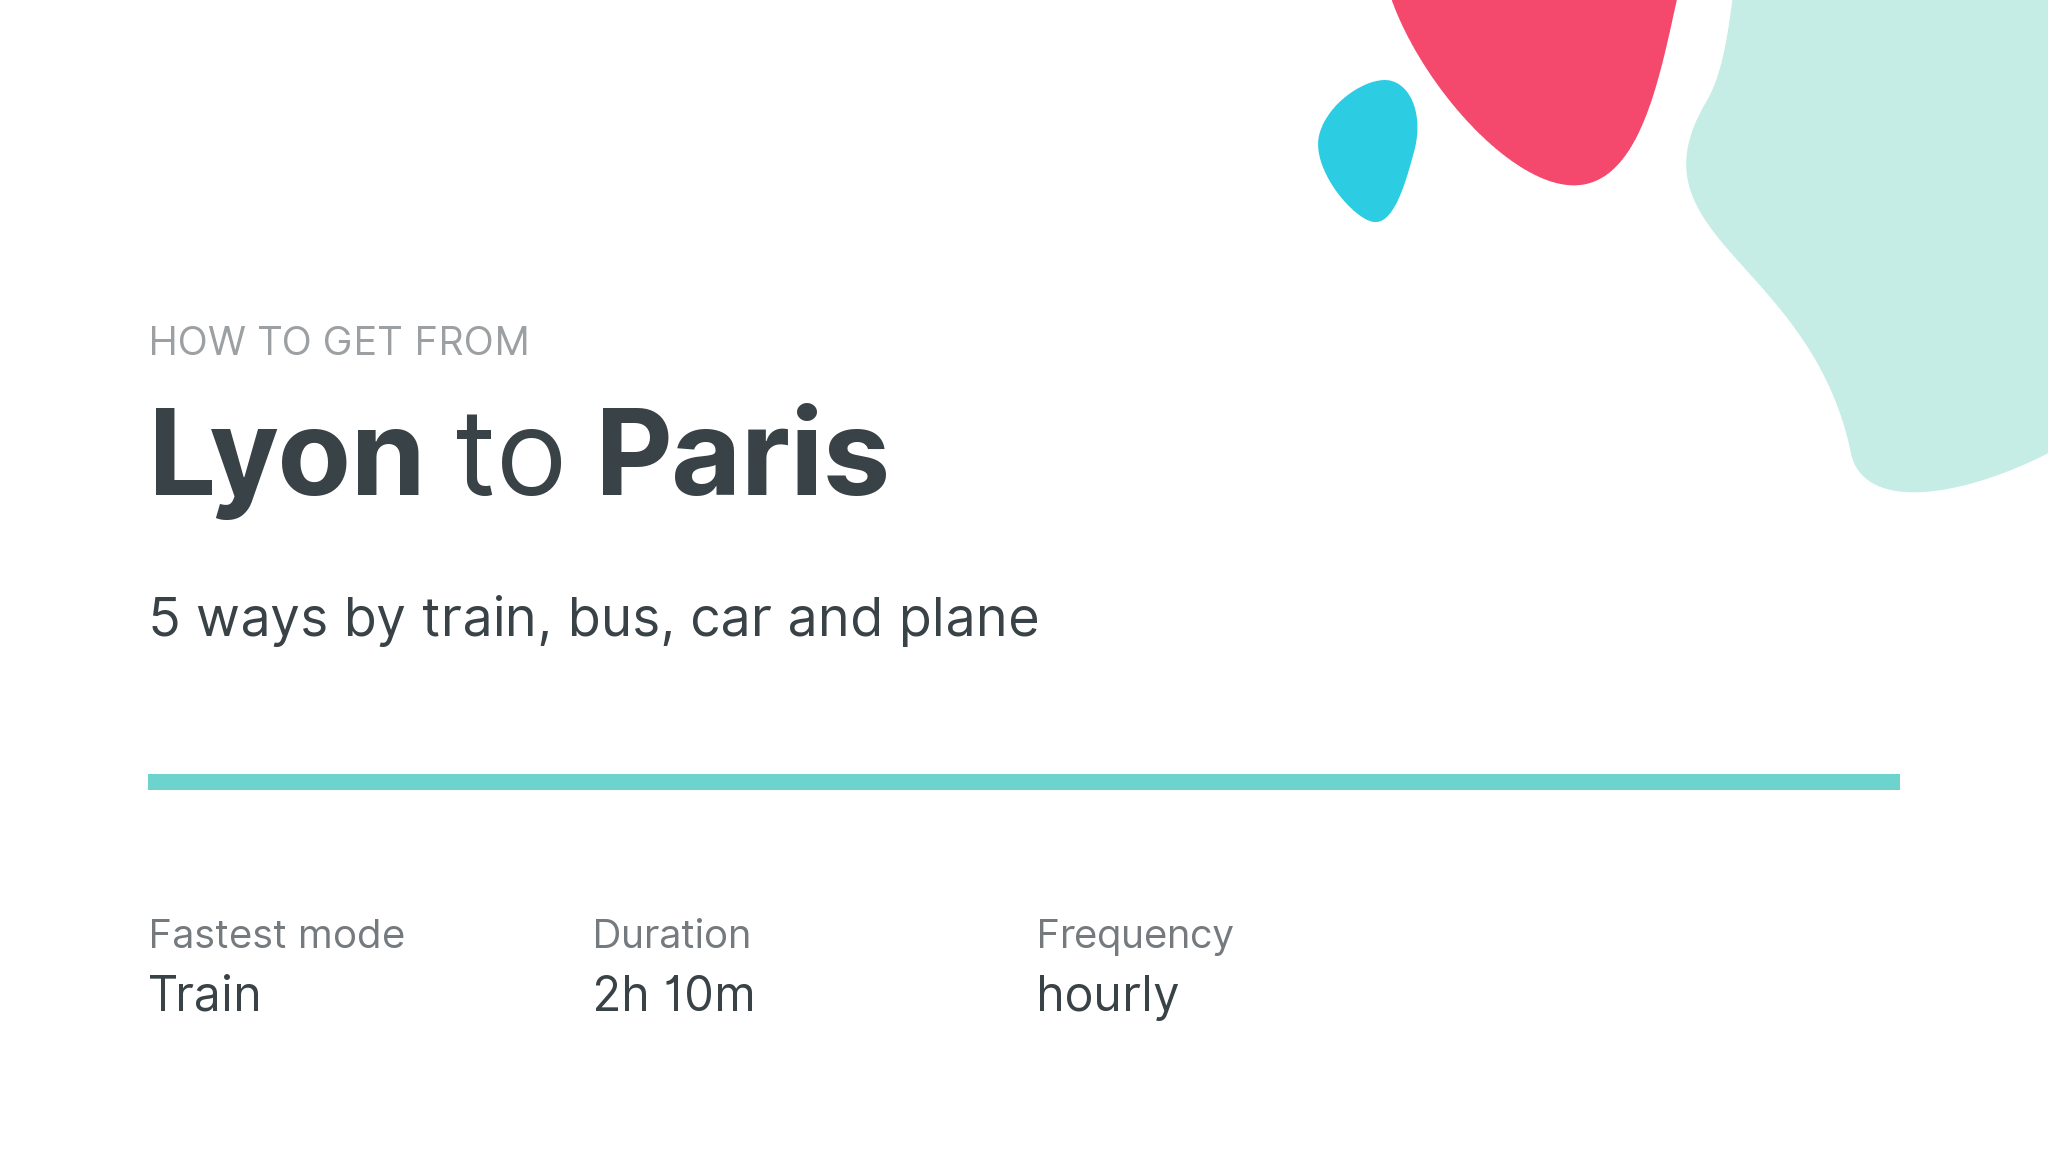 How do I get from Lyon to Paris